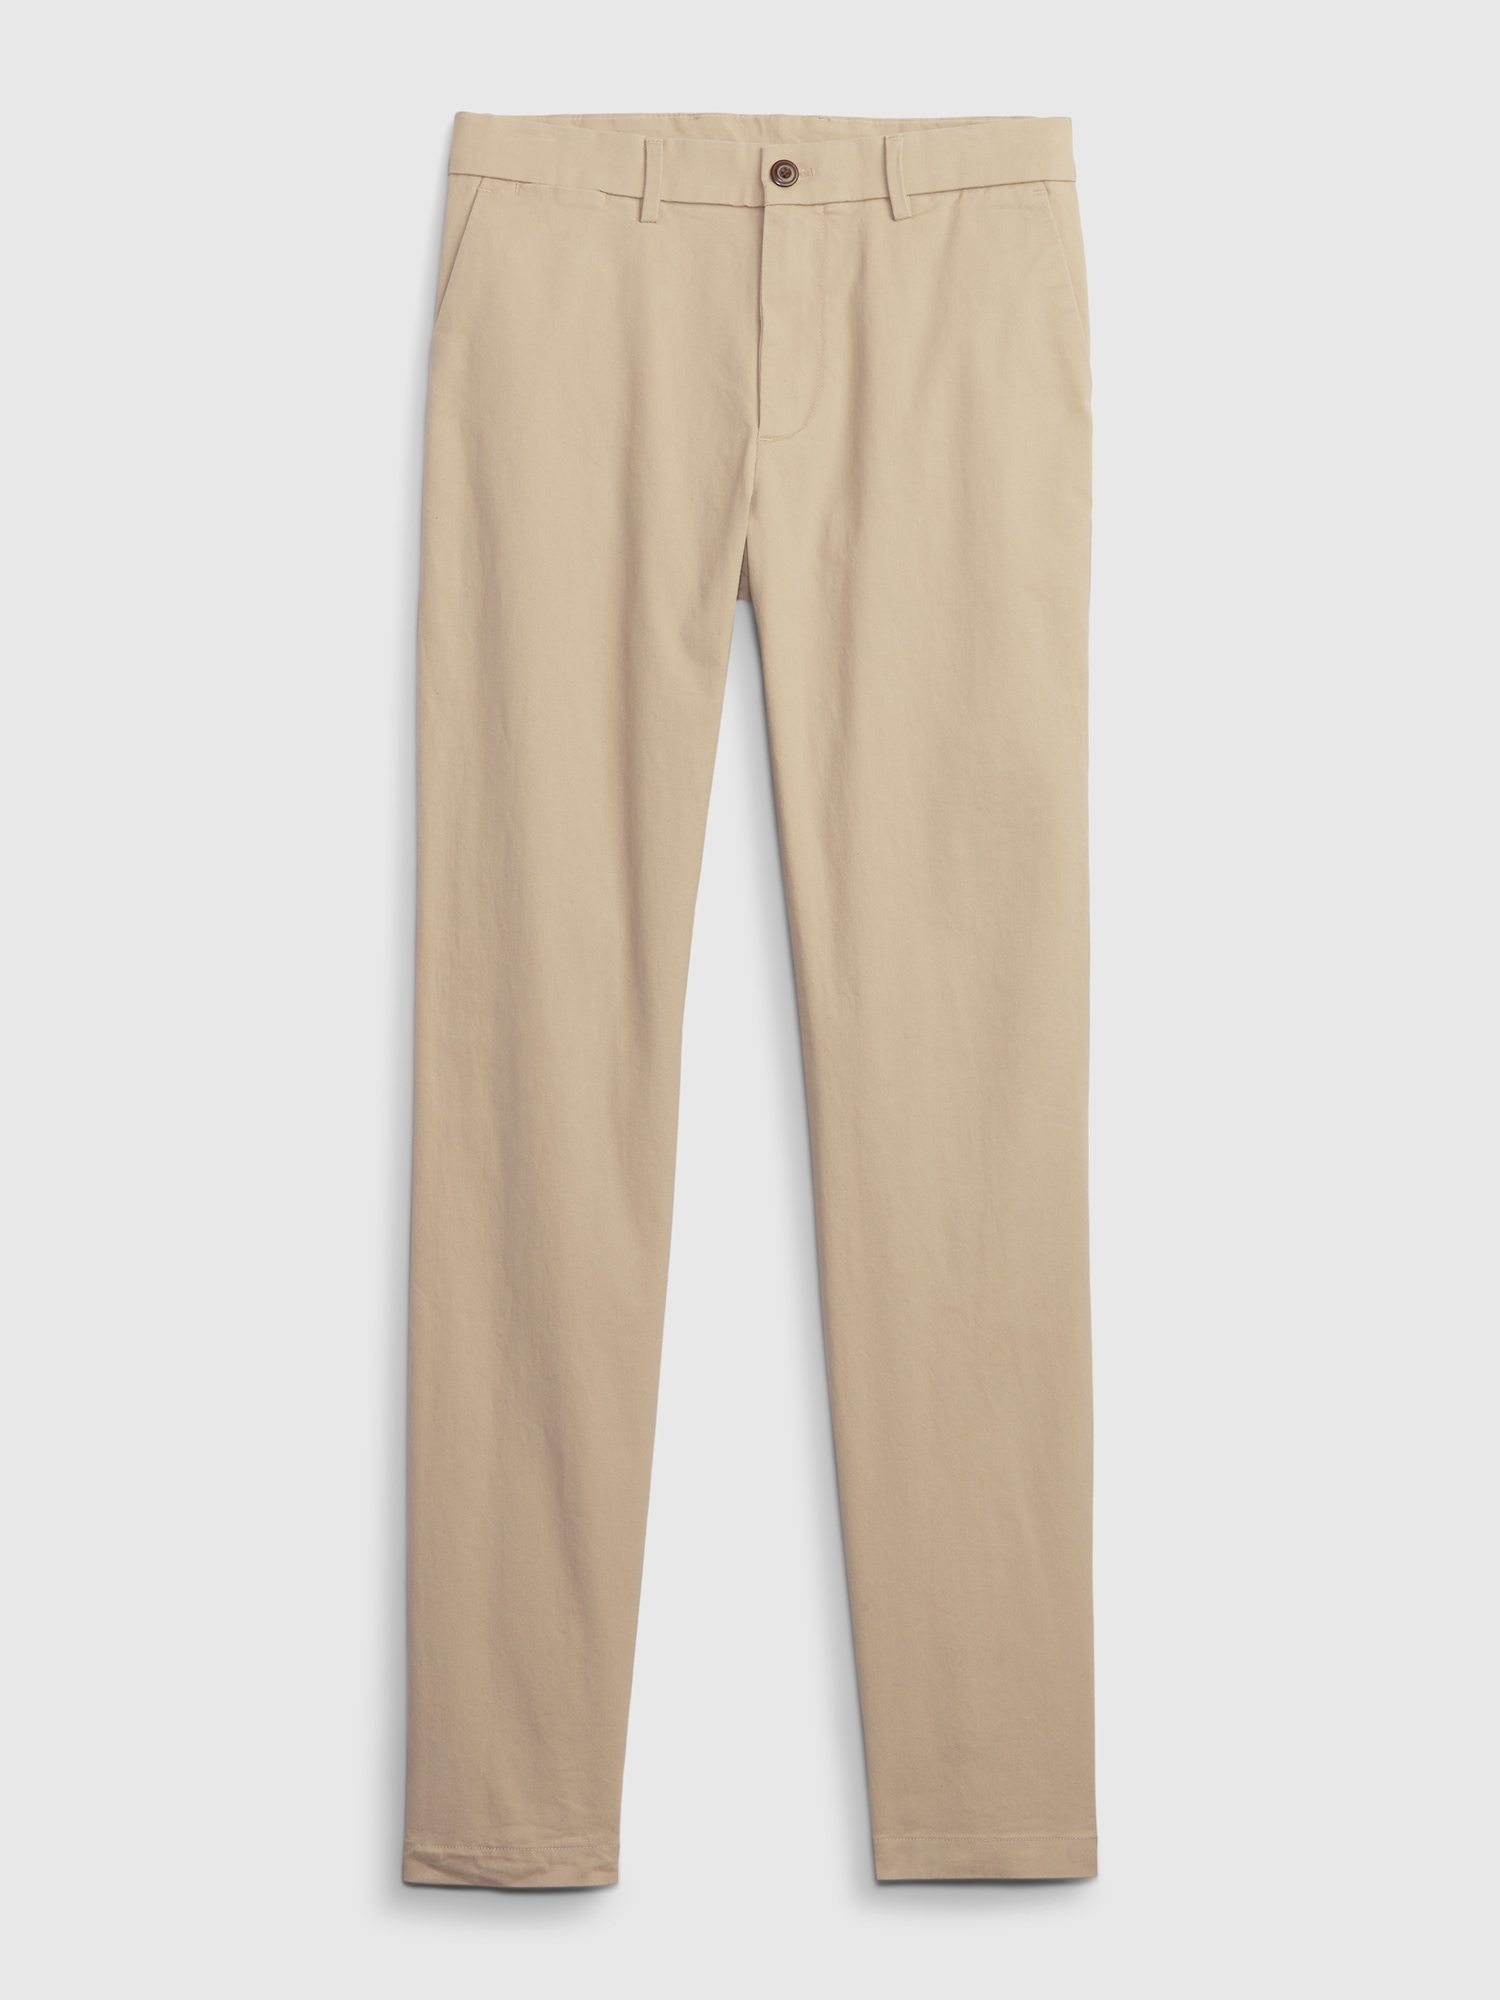 NWT Mens GAP GapFlex Essential Khakis Skinny Fit Pants Chino Stretch $59